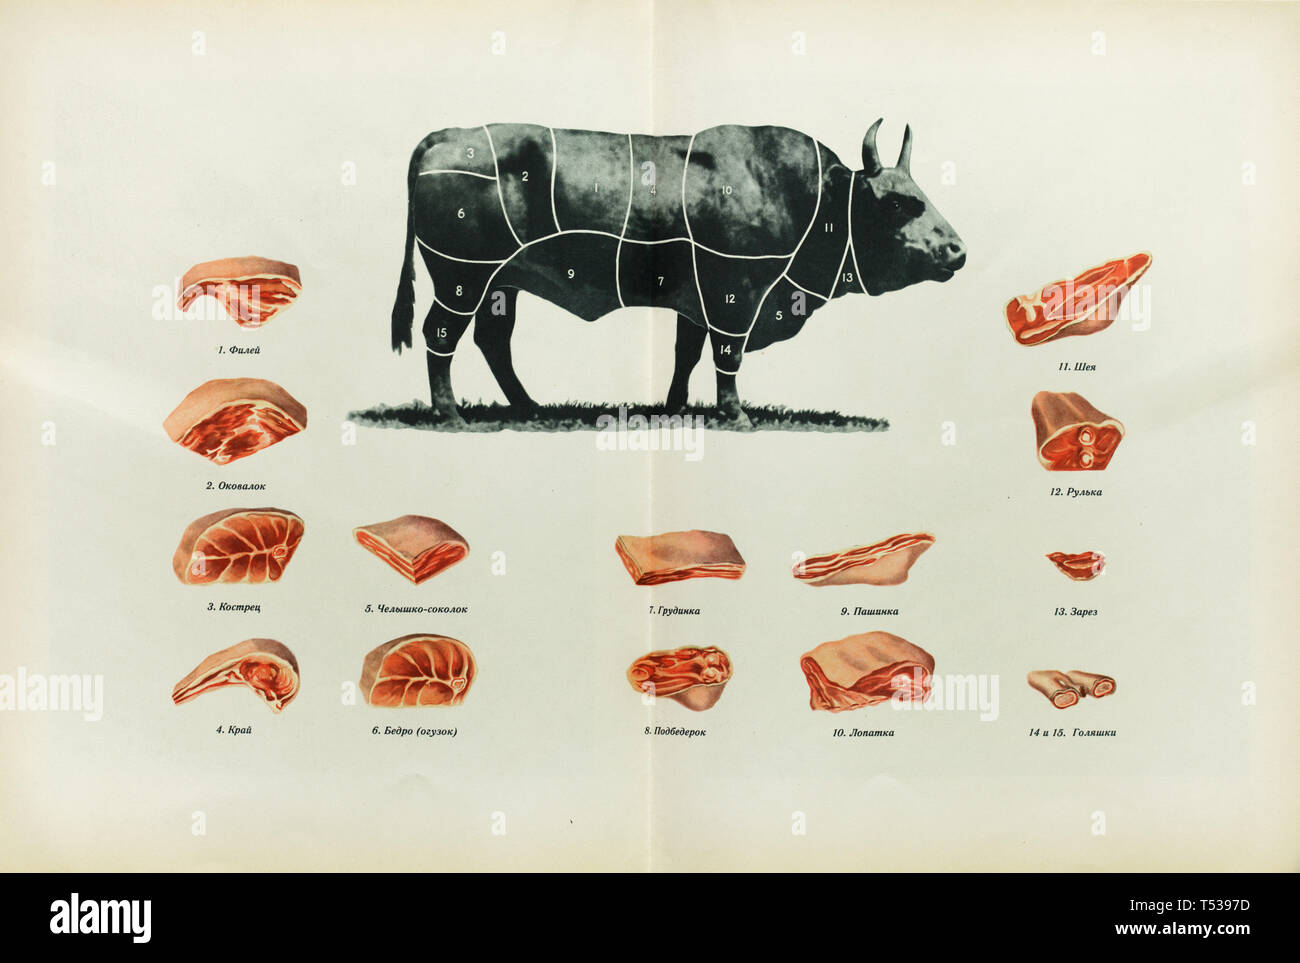 Cortes de carne de bovino ruso representado en la ilustración a color en el libro de alimentos sanos y sabrosos publicado en la Unión Soviética (1953). Índice: 1 - borde delgado o corto filet (archivo en ruso); 2 - el solomillo (okovalok); 3 - la pierna (kostrets); 4 - Borde grueso o rib eye (kray); 5 - pecho (chelyshko sokolok); 6 - las nalgas o la cadera (bedro o oguzok); 7 - pecho (grudinka); 8 - las nalgas o la cadera (podbedrok); 9 - el flanco (pashinka o pashina); 10 - hombro (lopatka); 11 - cuello (sheya); 12 - hock o hough (rulka); 13 - primer corte (zarez); 14 y 15 - el vástago (golyashka). Foto de stock